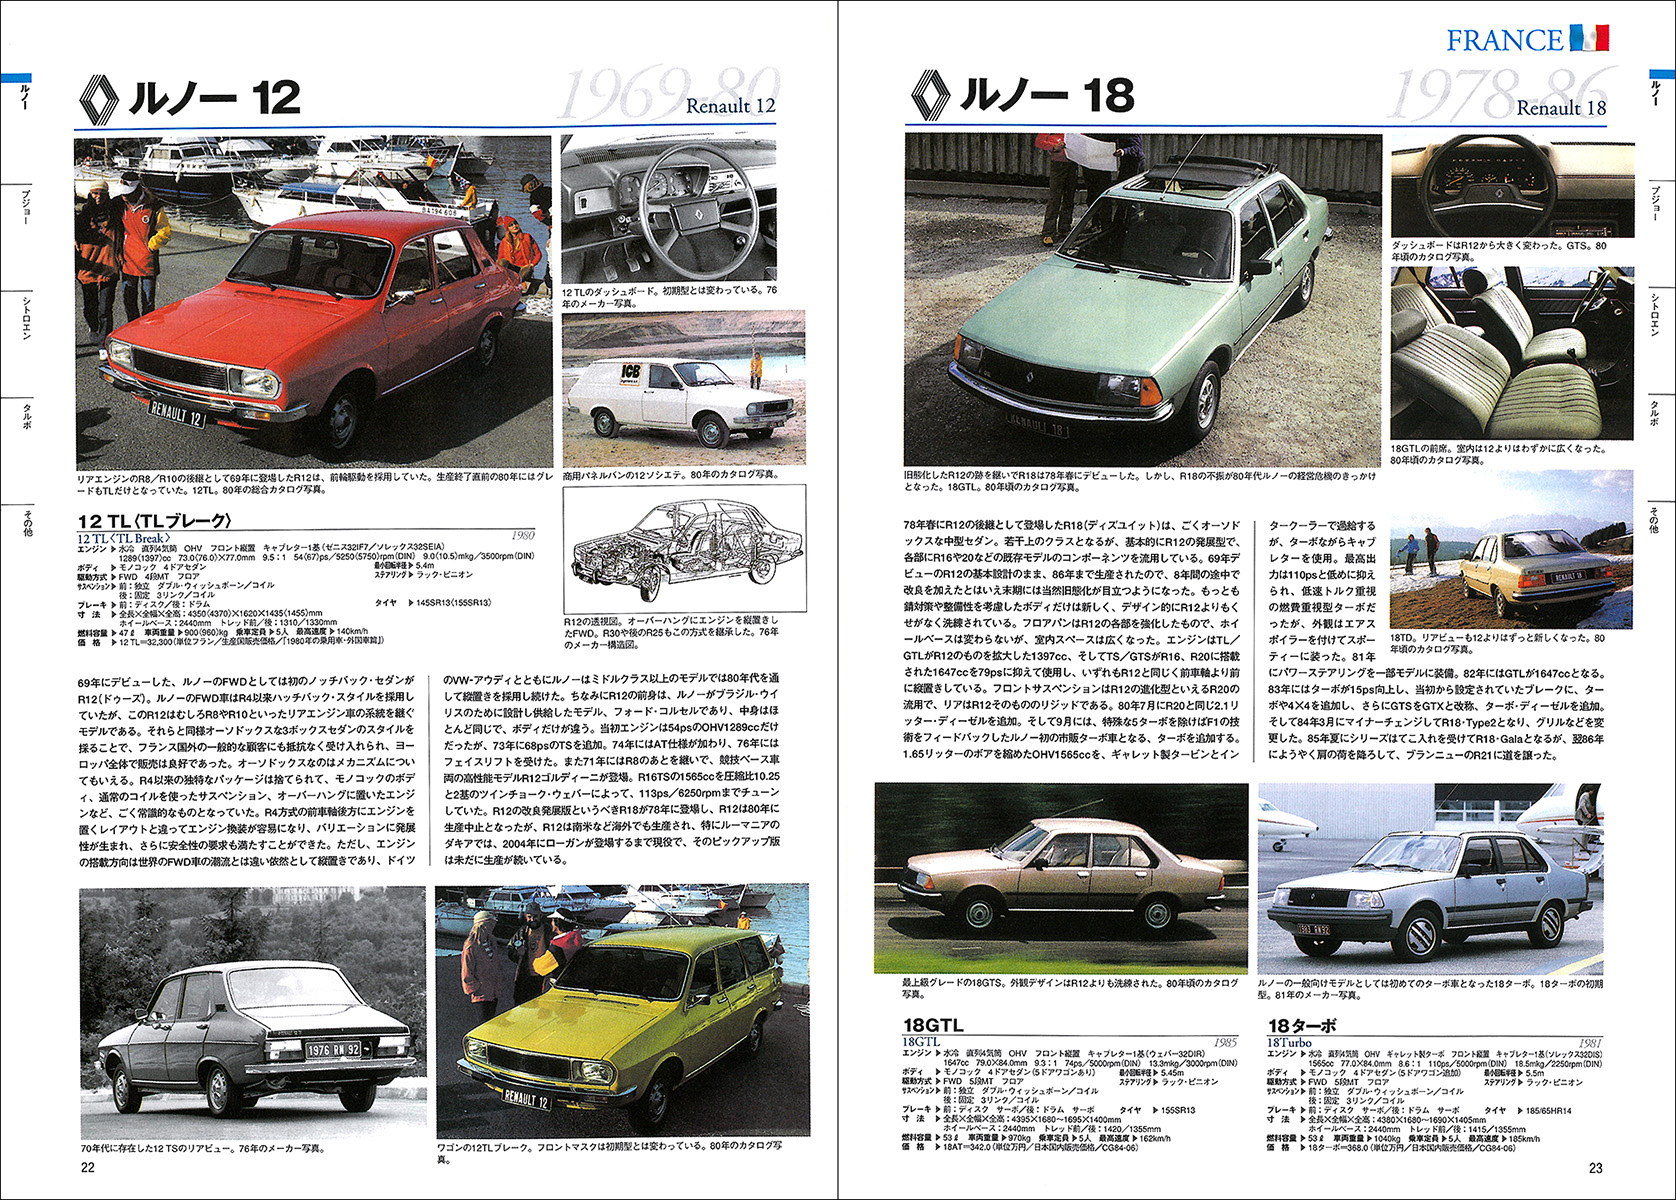 自動車アーカイヴ Vol.14 80年代のフランス車篇 - 株式会社二玄社